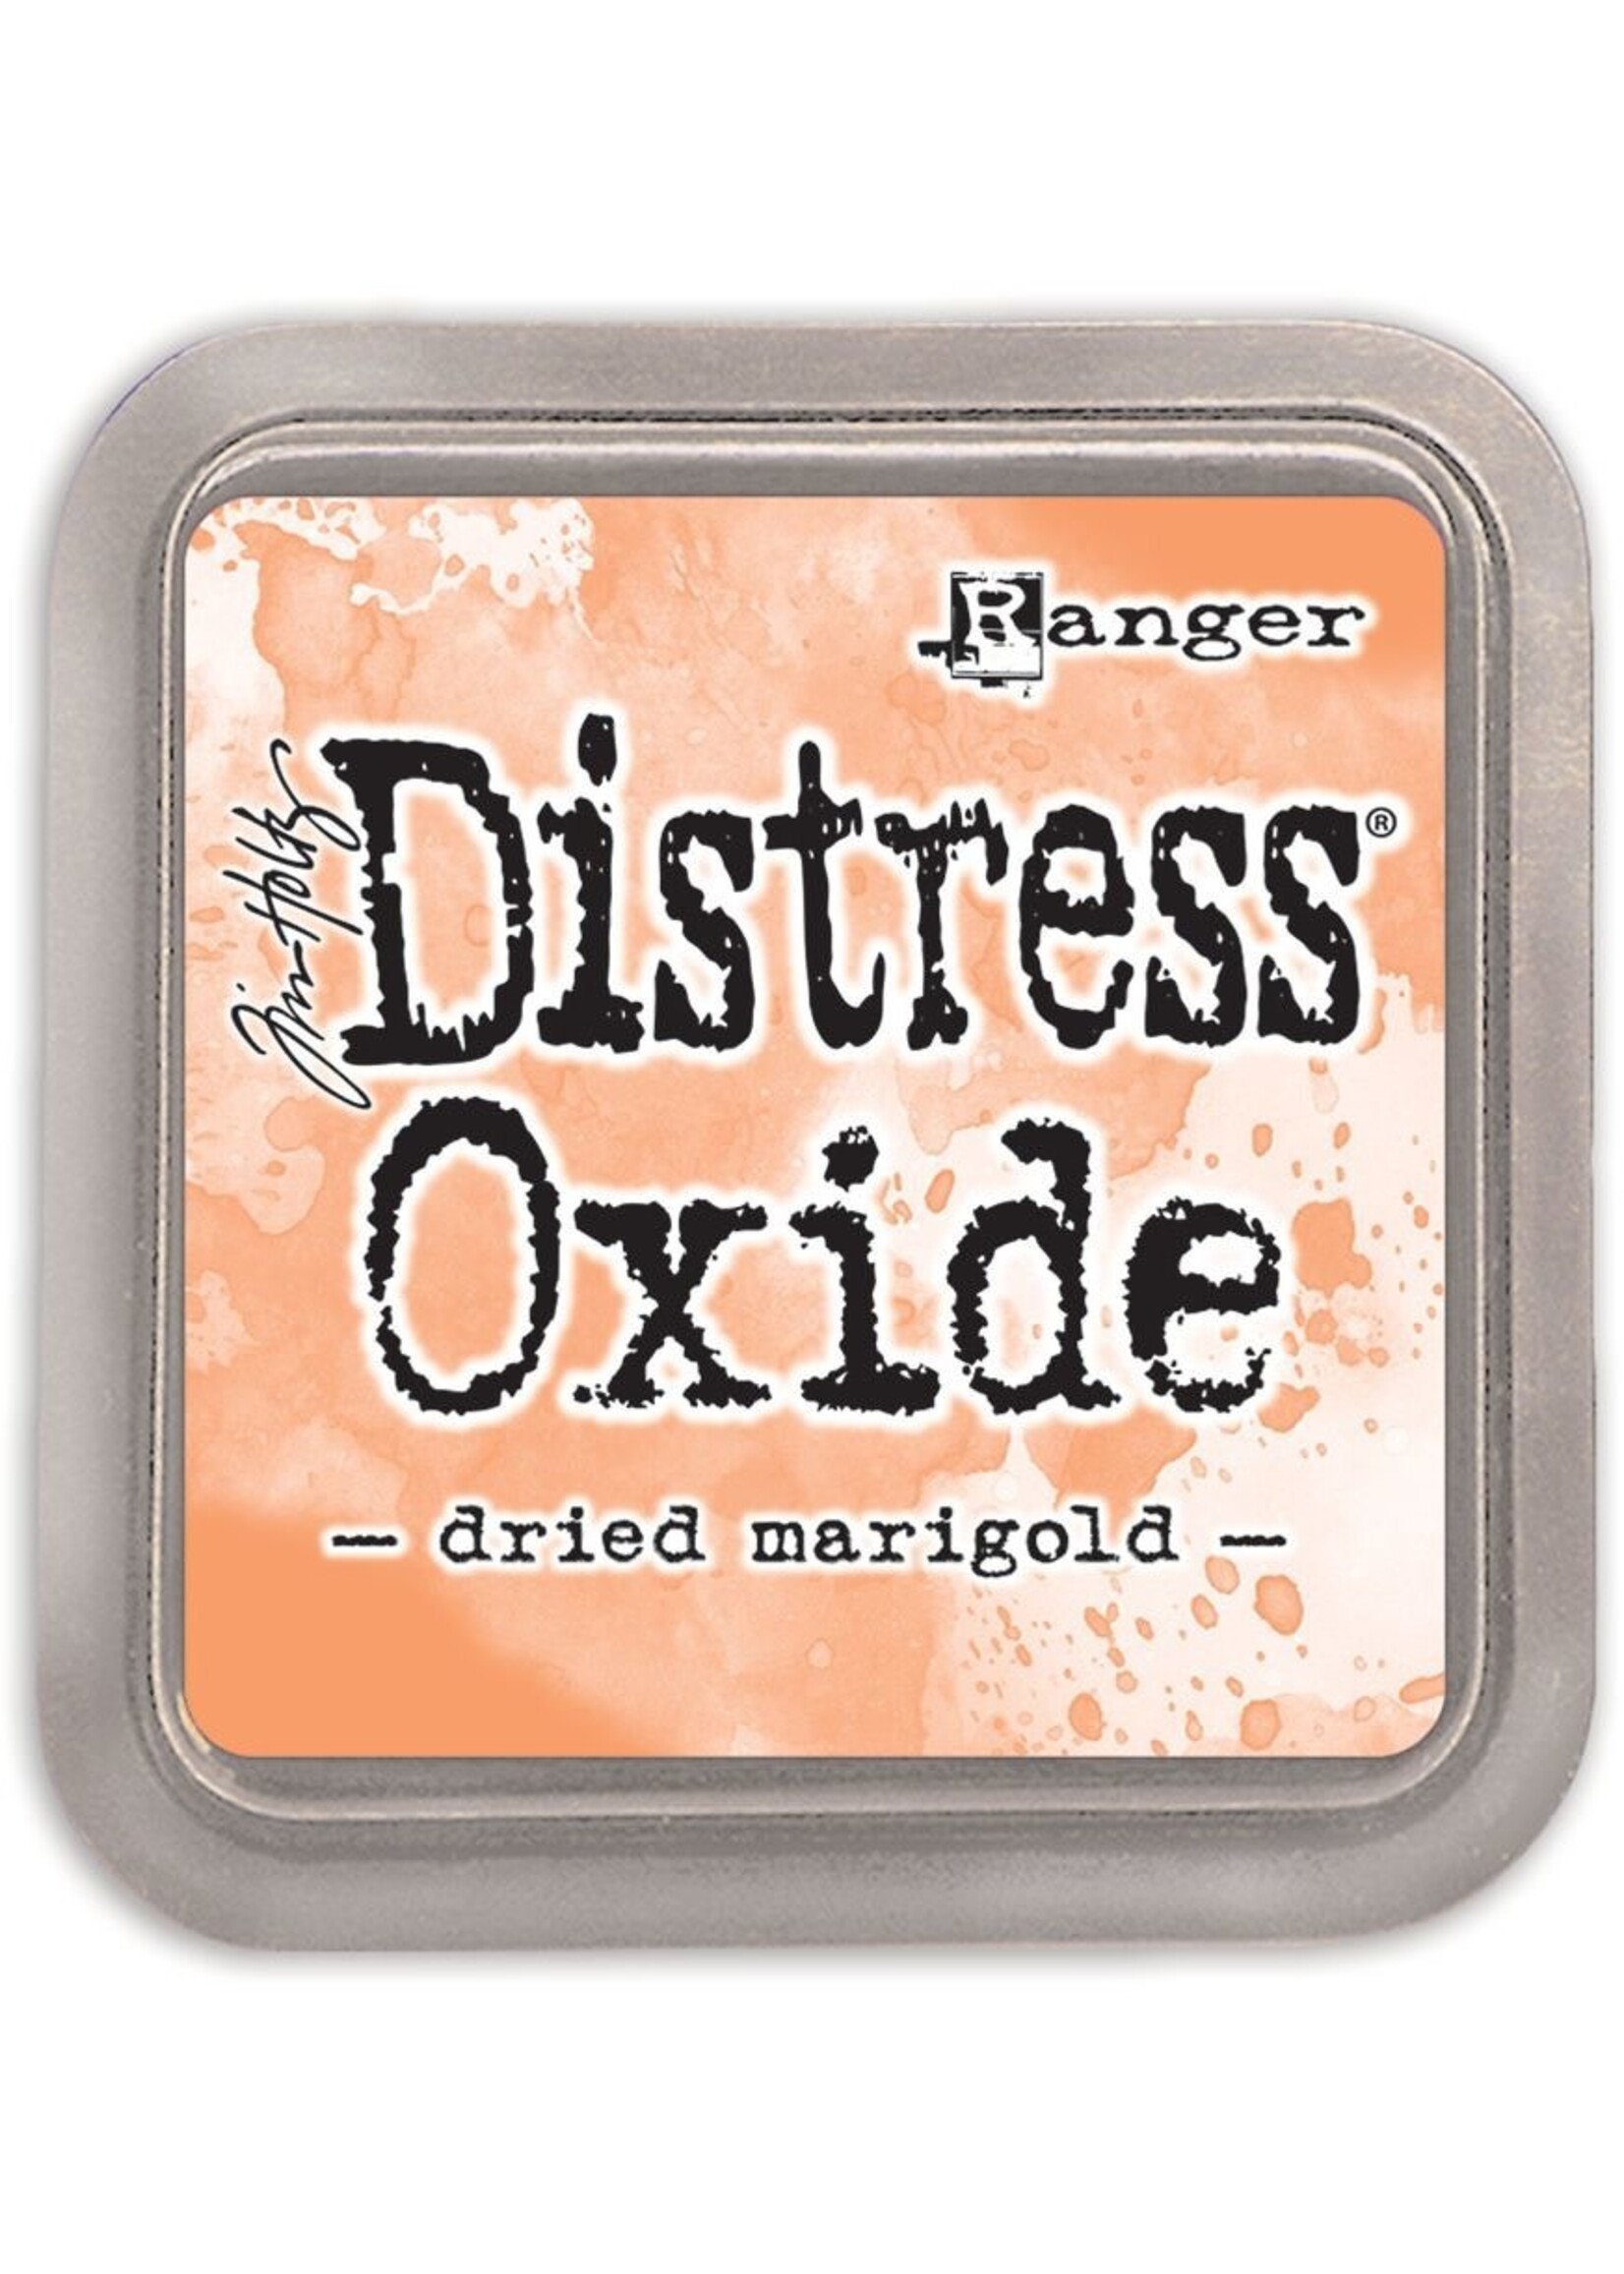 Ranger Tim Holtz Distress Oxide, Dried Marigold